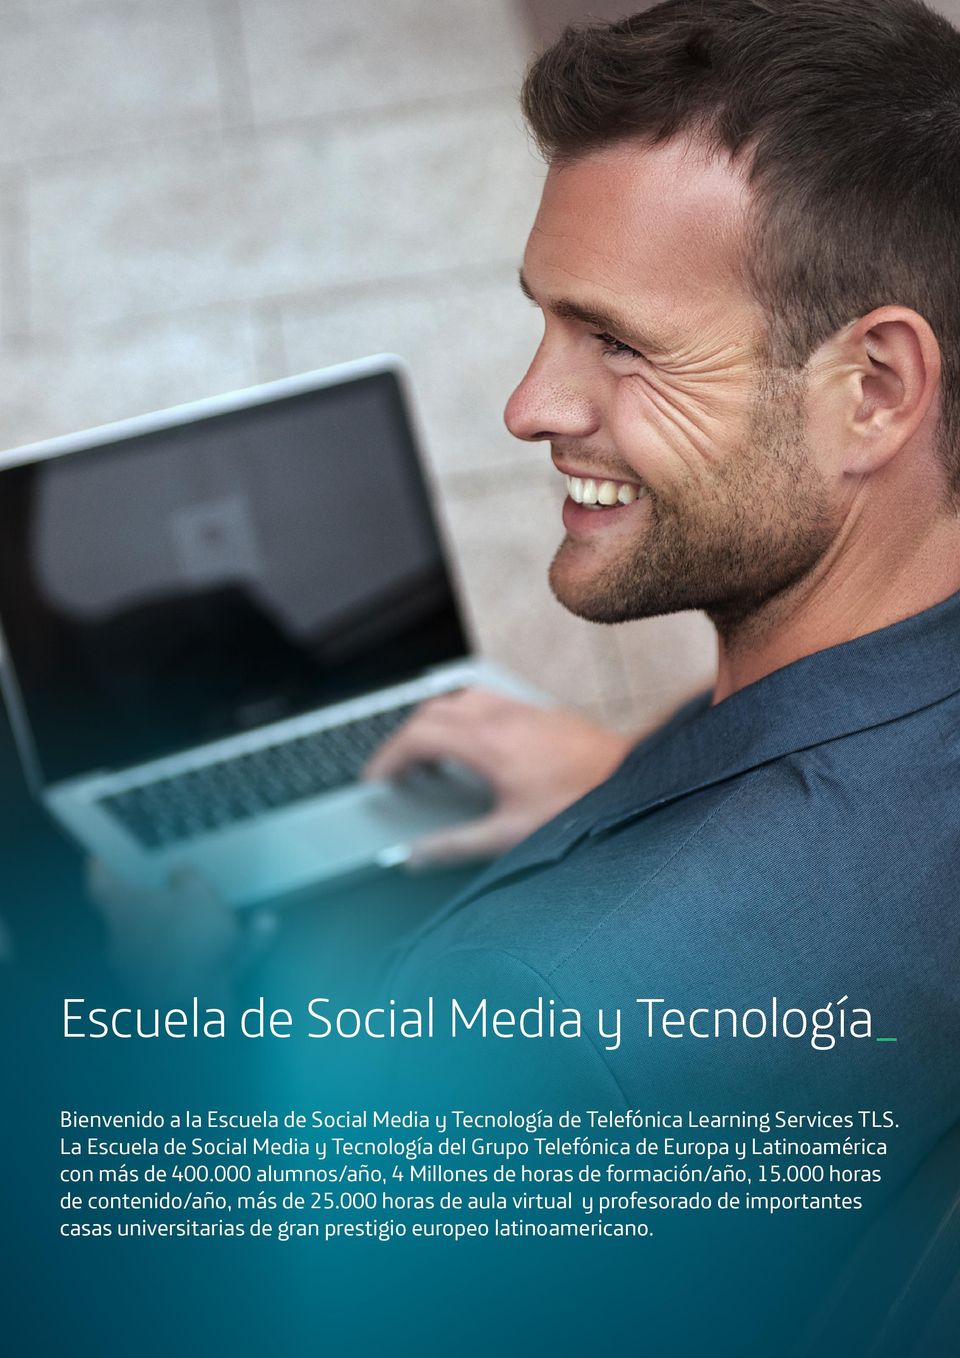 La Escuela de Social Media y Tecnología del Grupo Telefónica de Europa y Latinoamérica con más de 400.